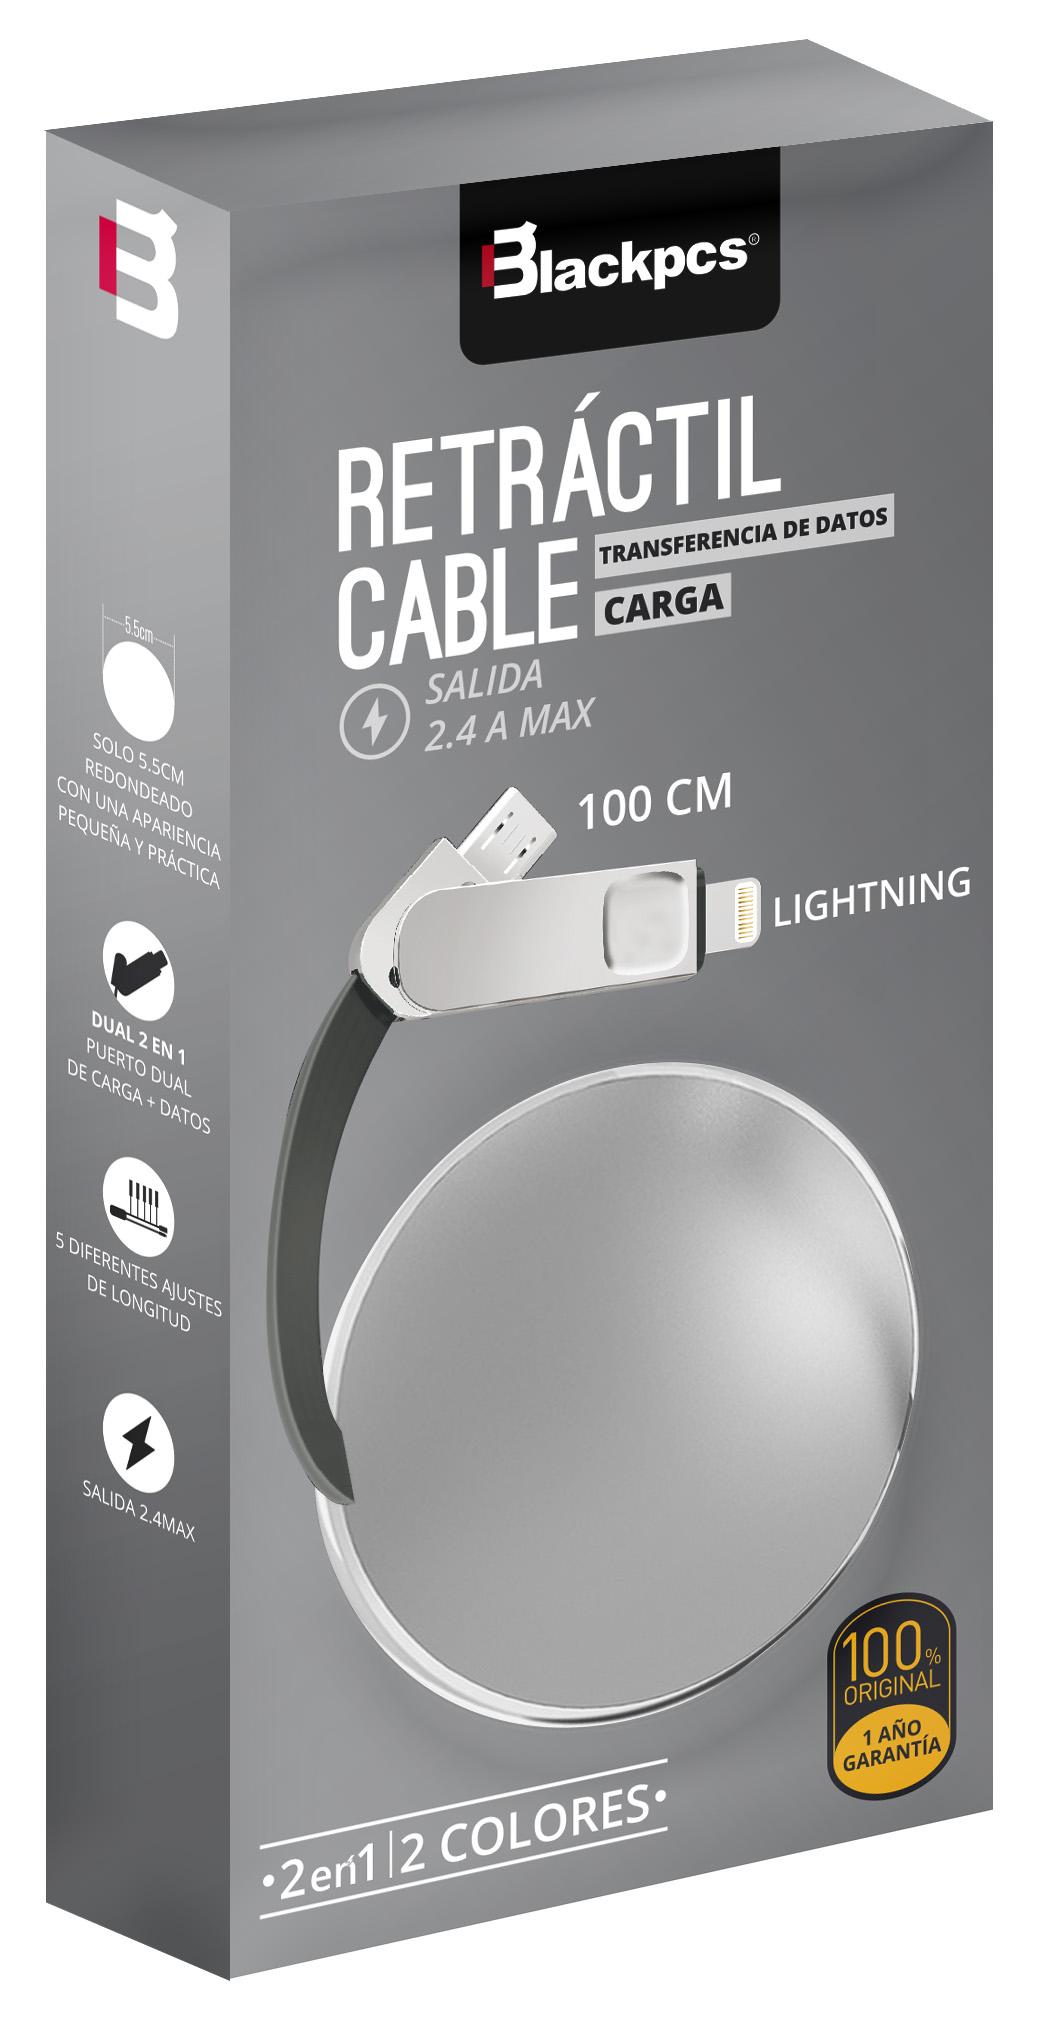 Cable Blackpcs  Ca Retractil  V8 Lightning Plata 100 Cm 2 1A  Casmlpr  - BLACKPCS